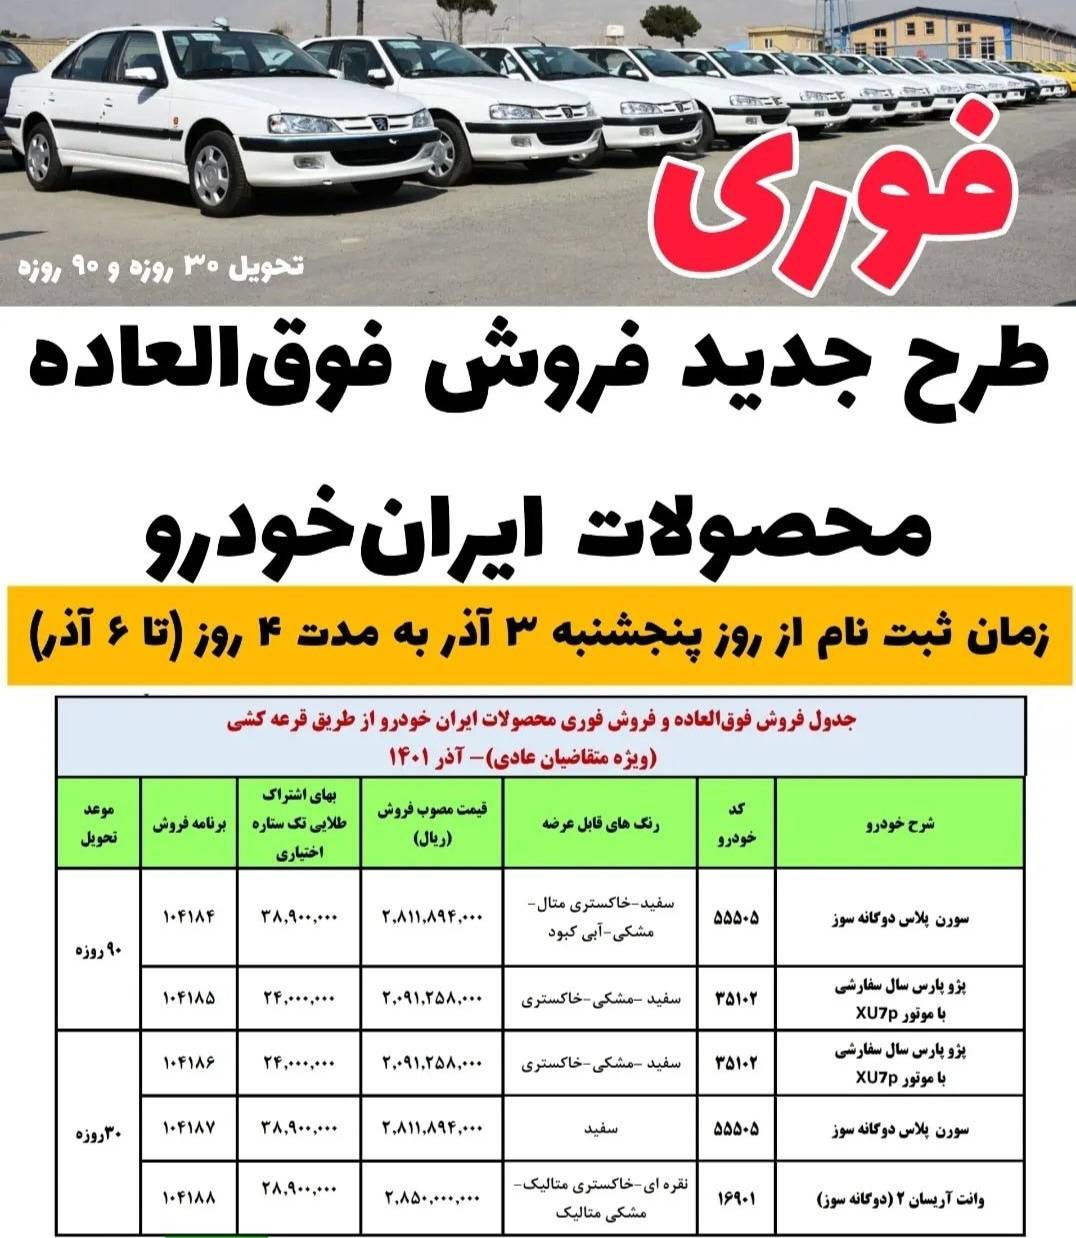 فروش فوق العاده محصولات ایران خودرو 3 آذر